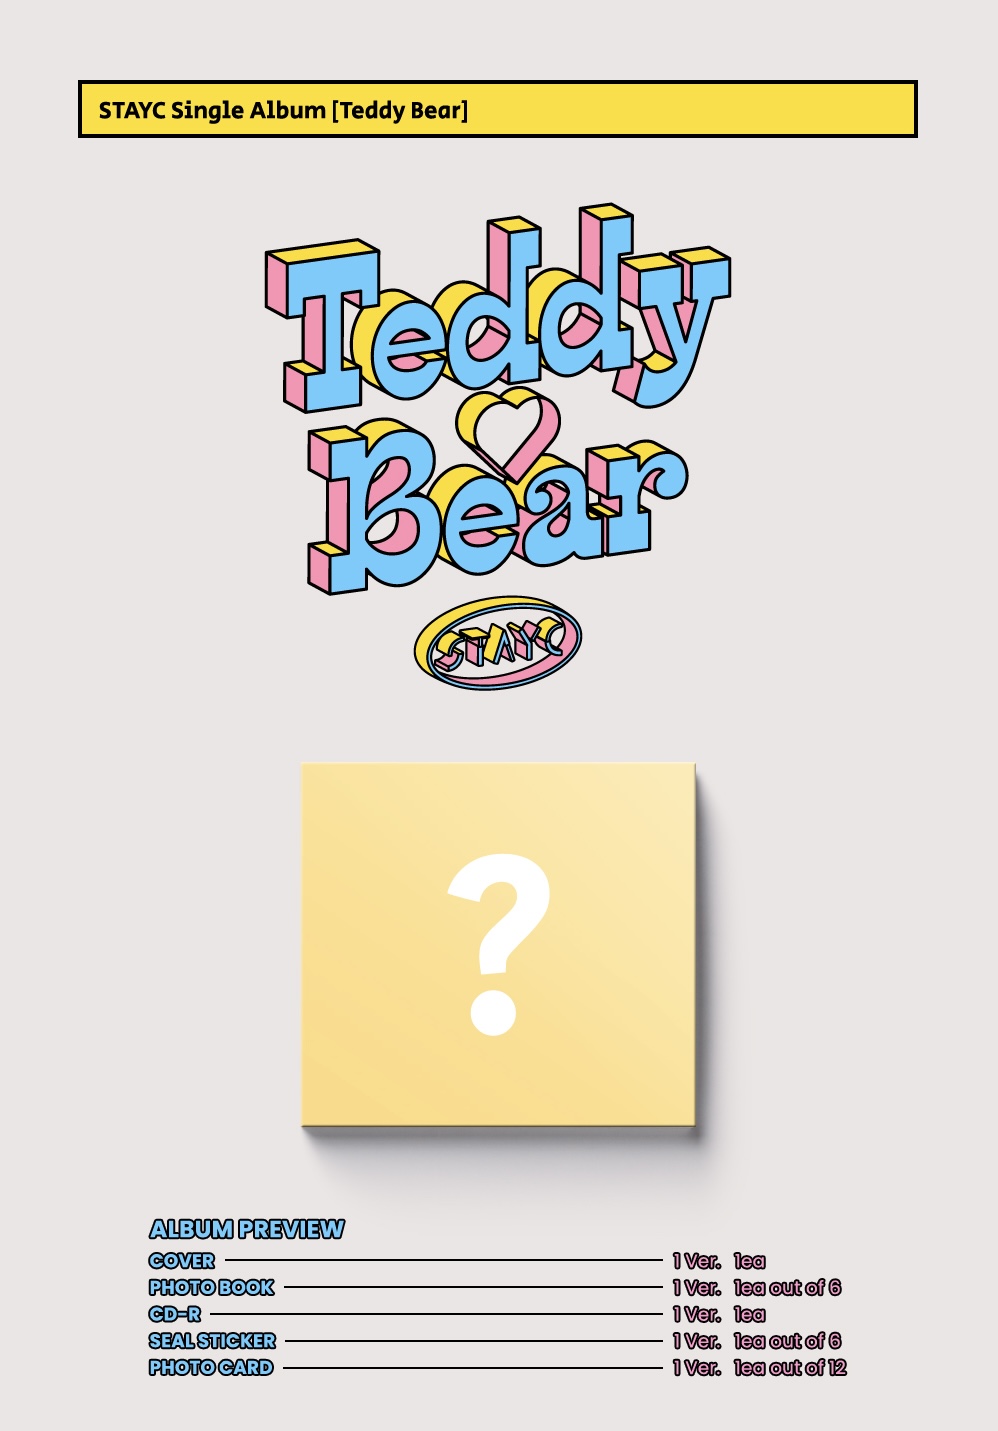 'Teddy Bear' by STAYC